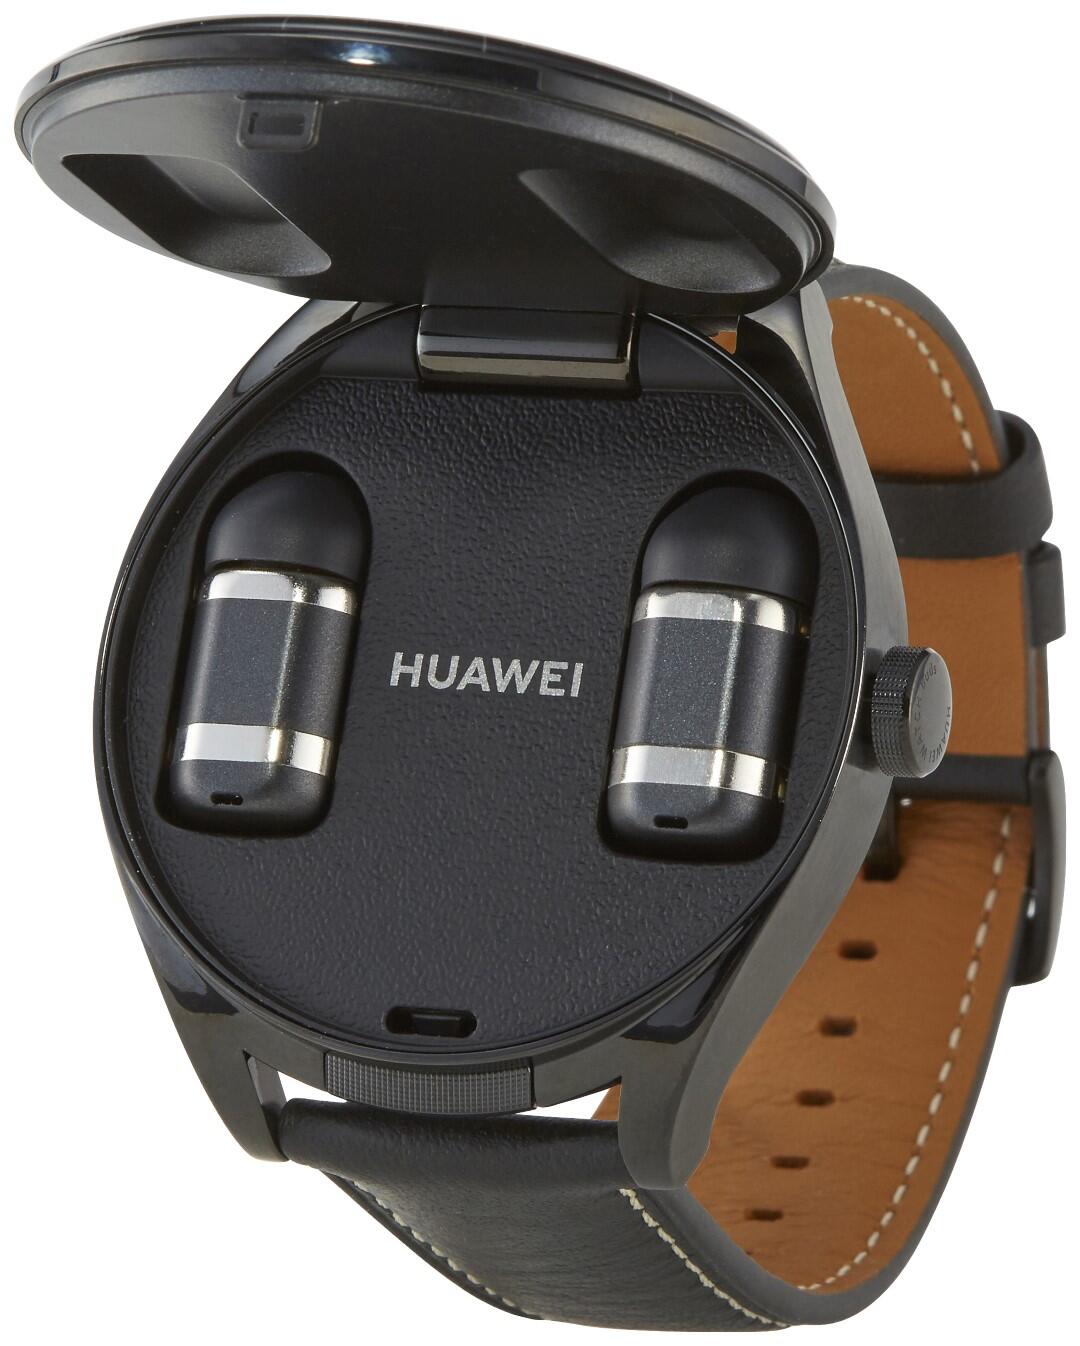 Watch Buds Huawei